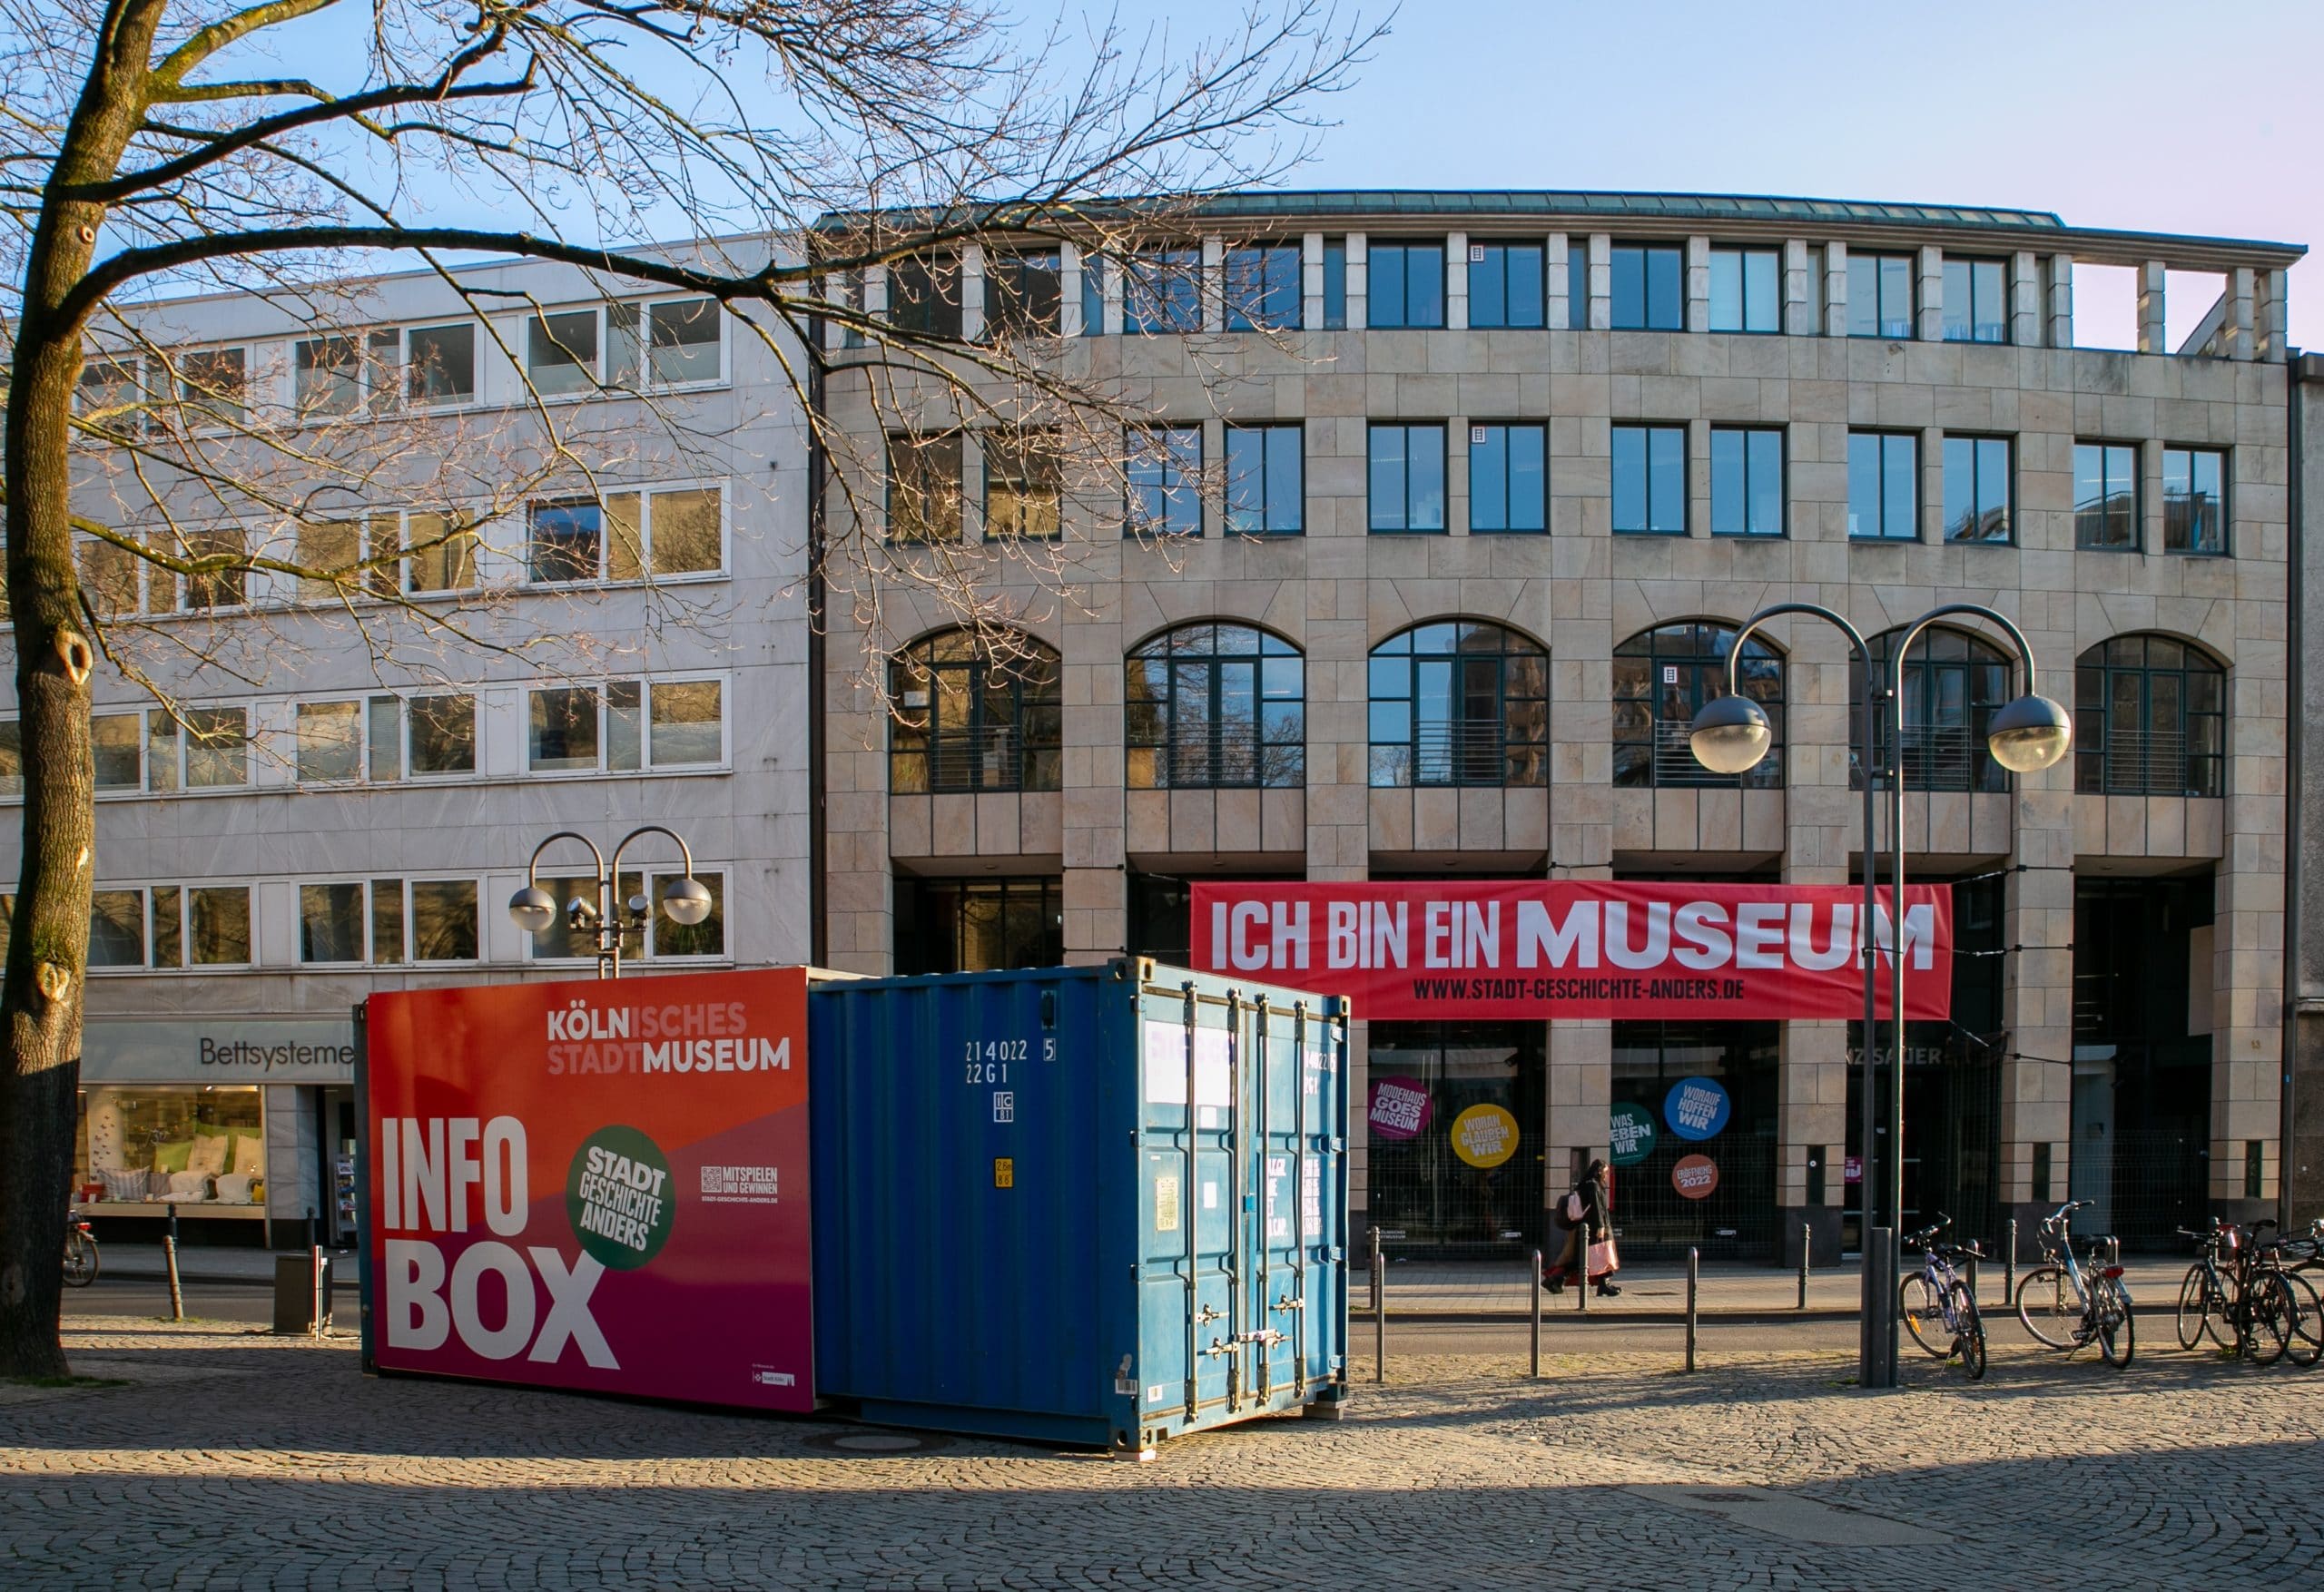 Auf dem Bild sieht man die aufgestellte Museums-Info-Box vor dem neuen Museum. Es ist ein blauer Container.